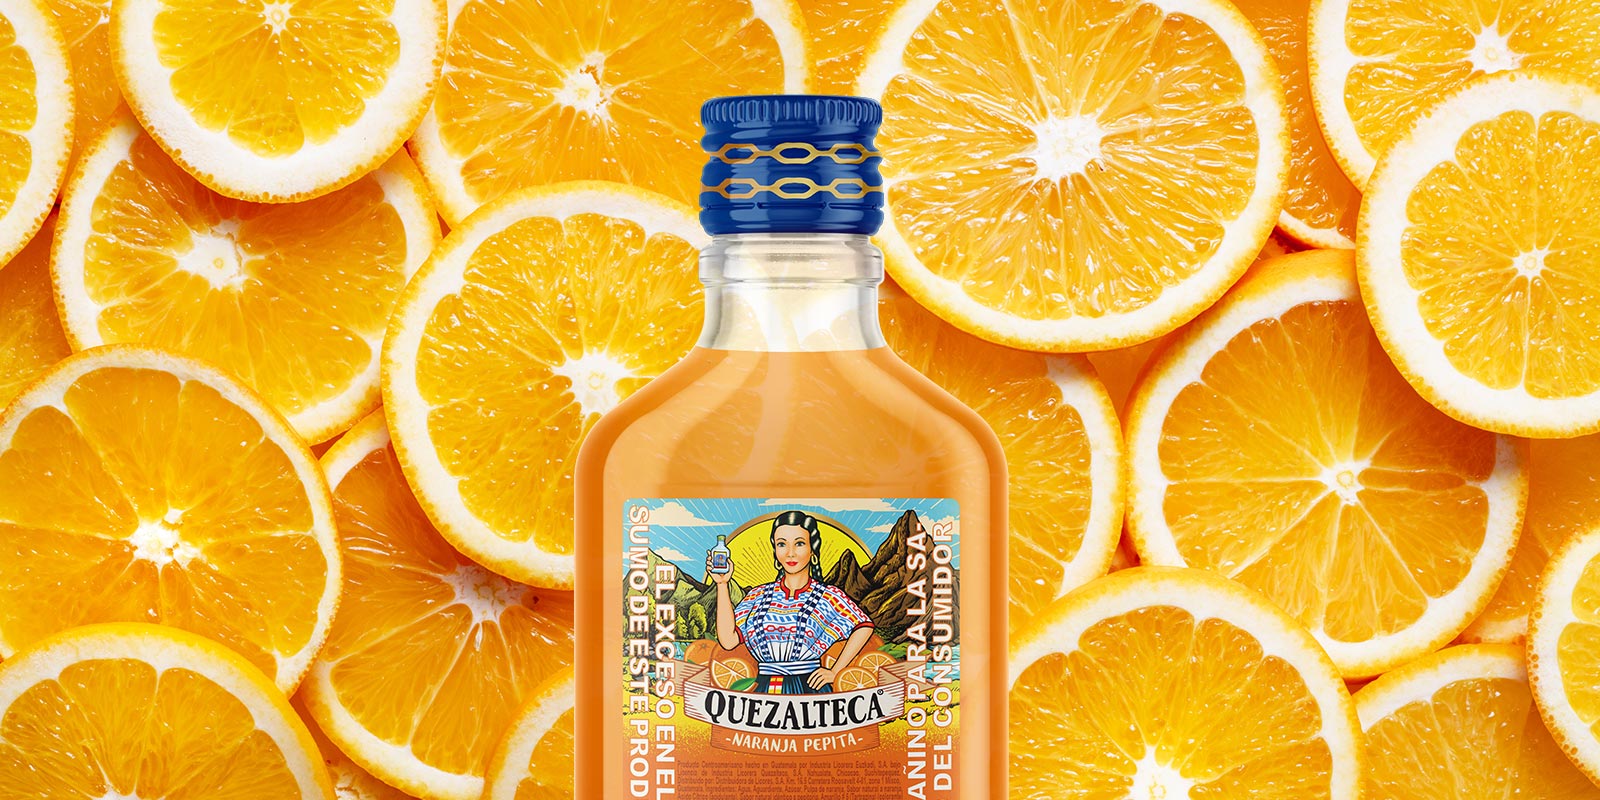 Imagen de botella de aguardiente Quezalteca sabor naranja pepita en fondo de rodajas de naranja, rediseño de etiqueta por Tridimage.